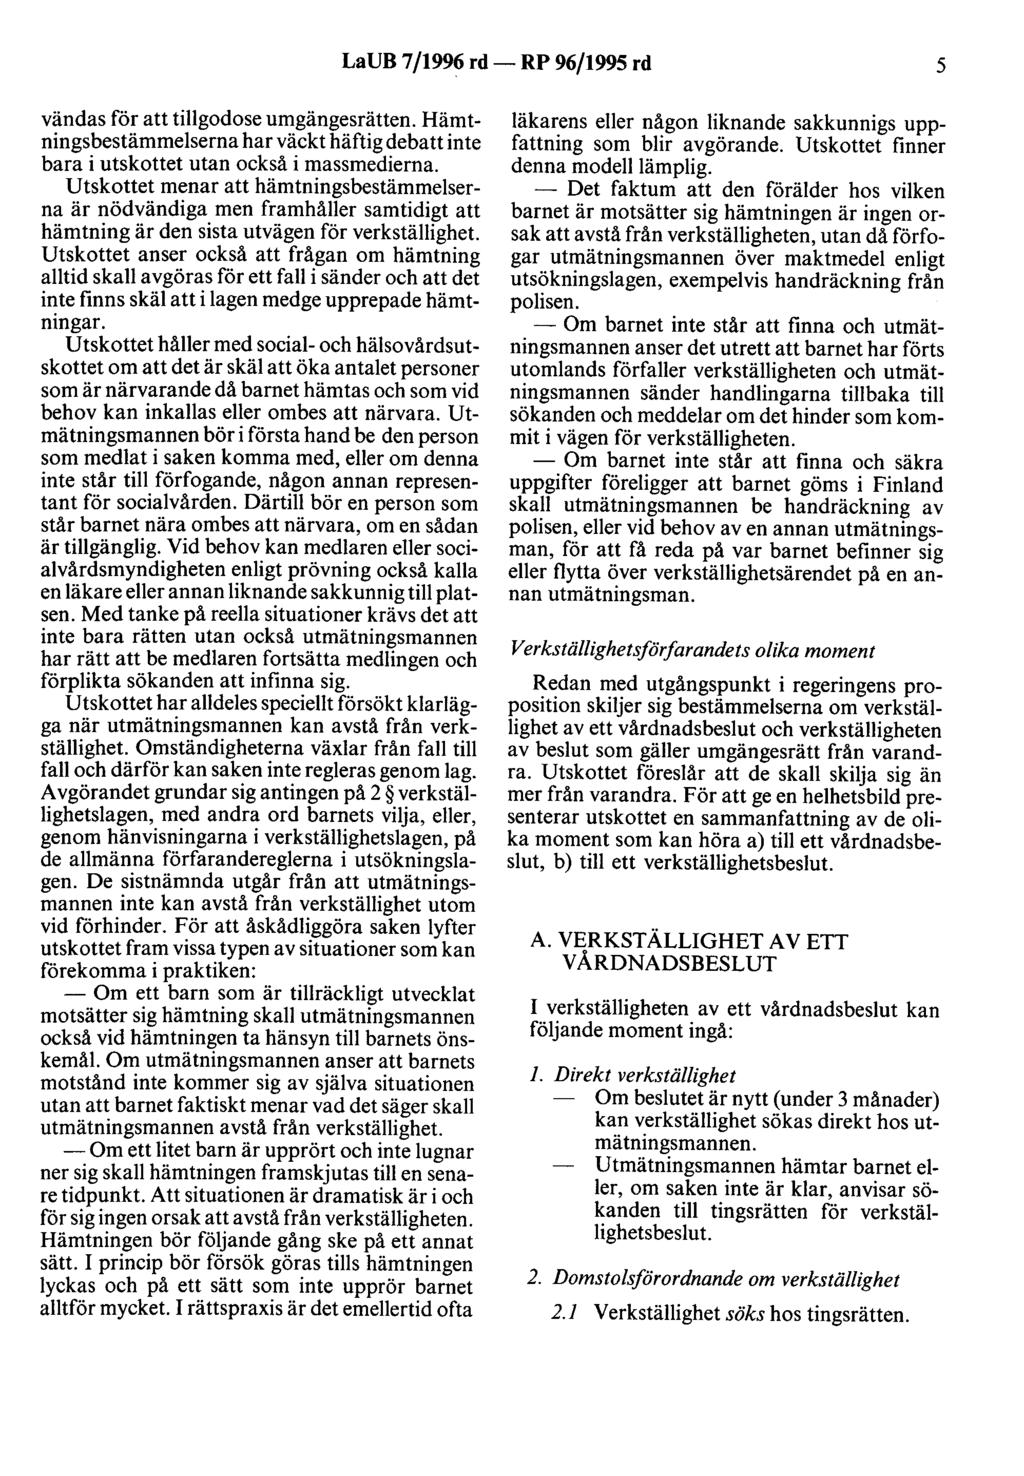 LaUB 7/1996 rd- RP 96/1995 rd 5 vändas för att tillgodose umgängesrätten. Hämtningsbestämmelserna har väckt häftig debatt inte bara i utskottet utan också i massmedierna.